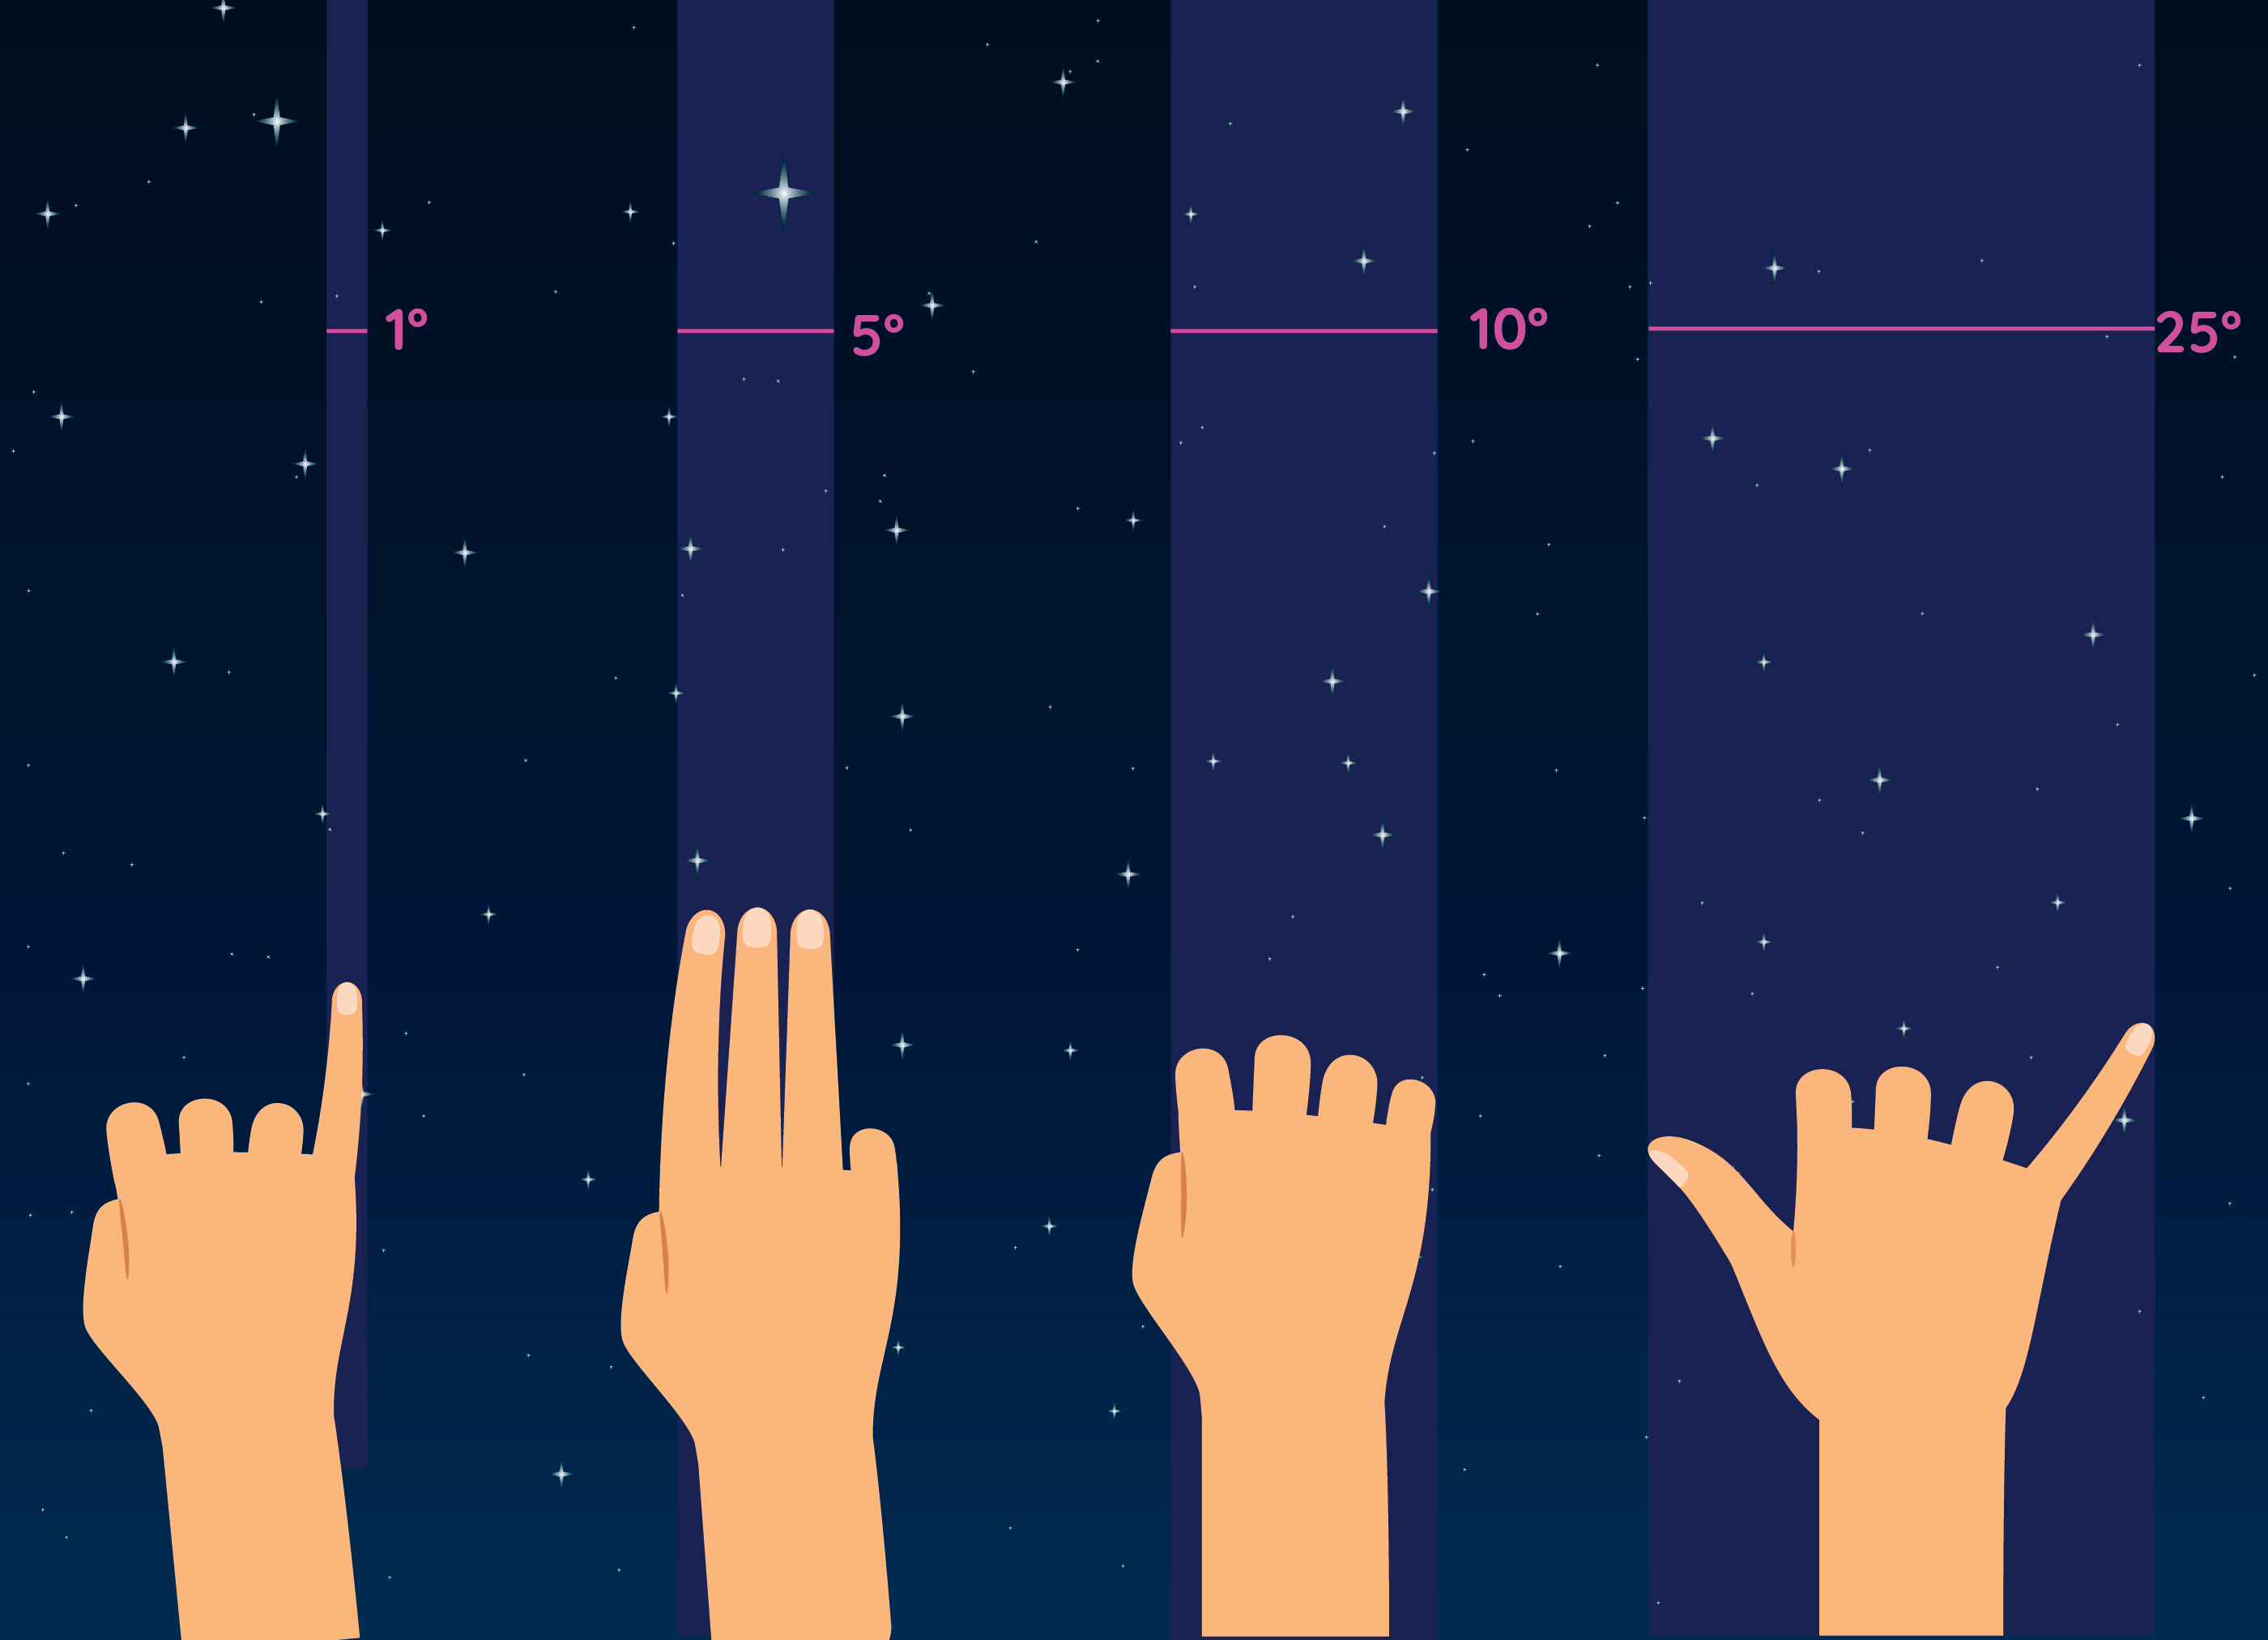 Astronomide el ölçüm yöntemi